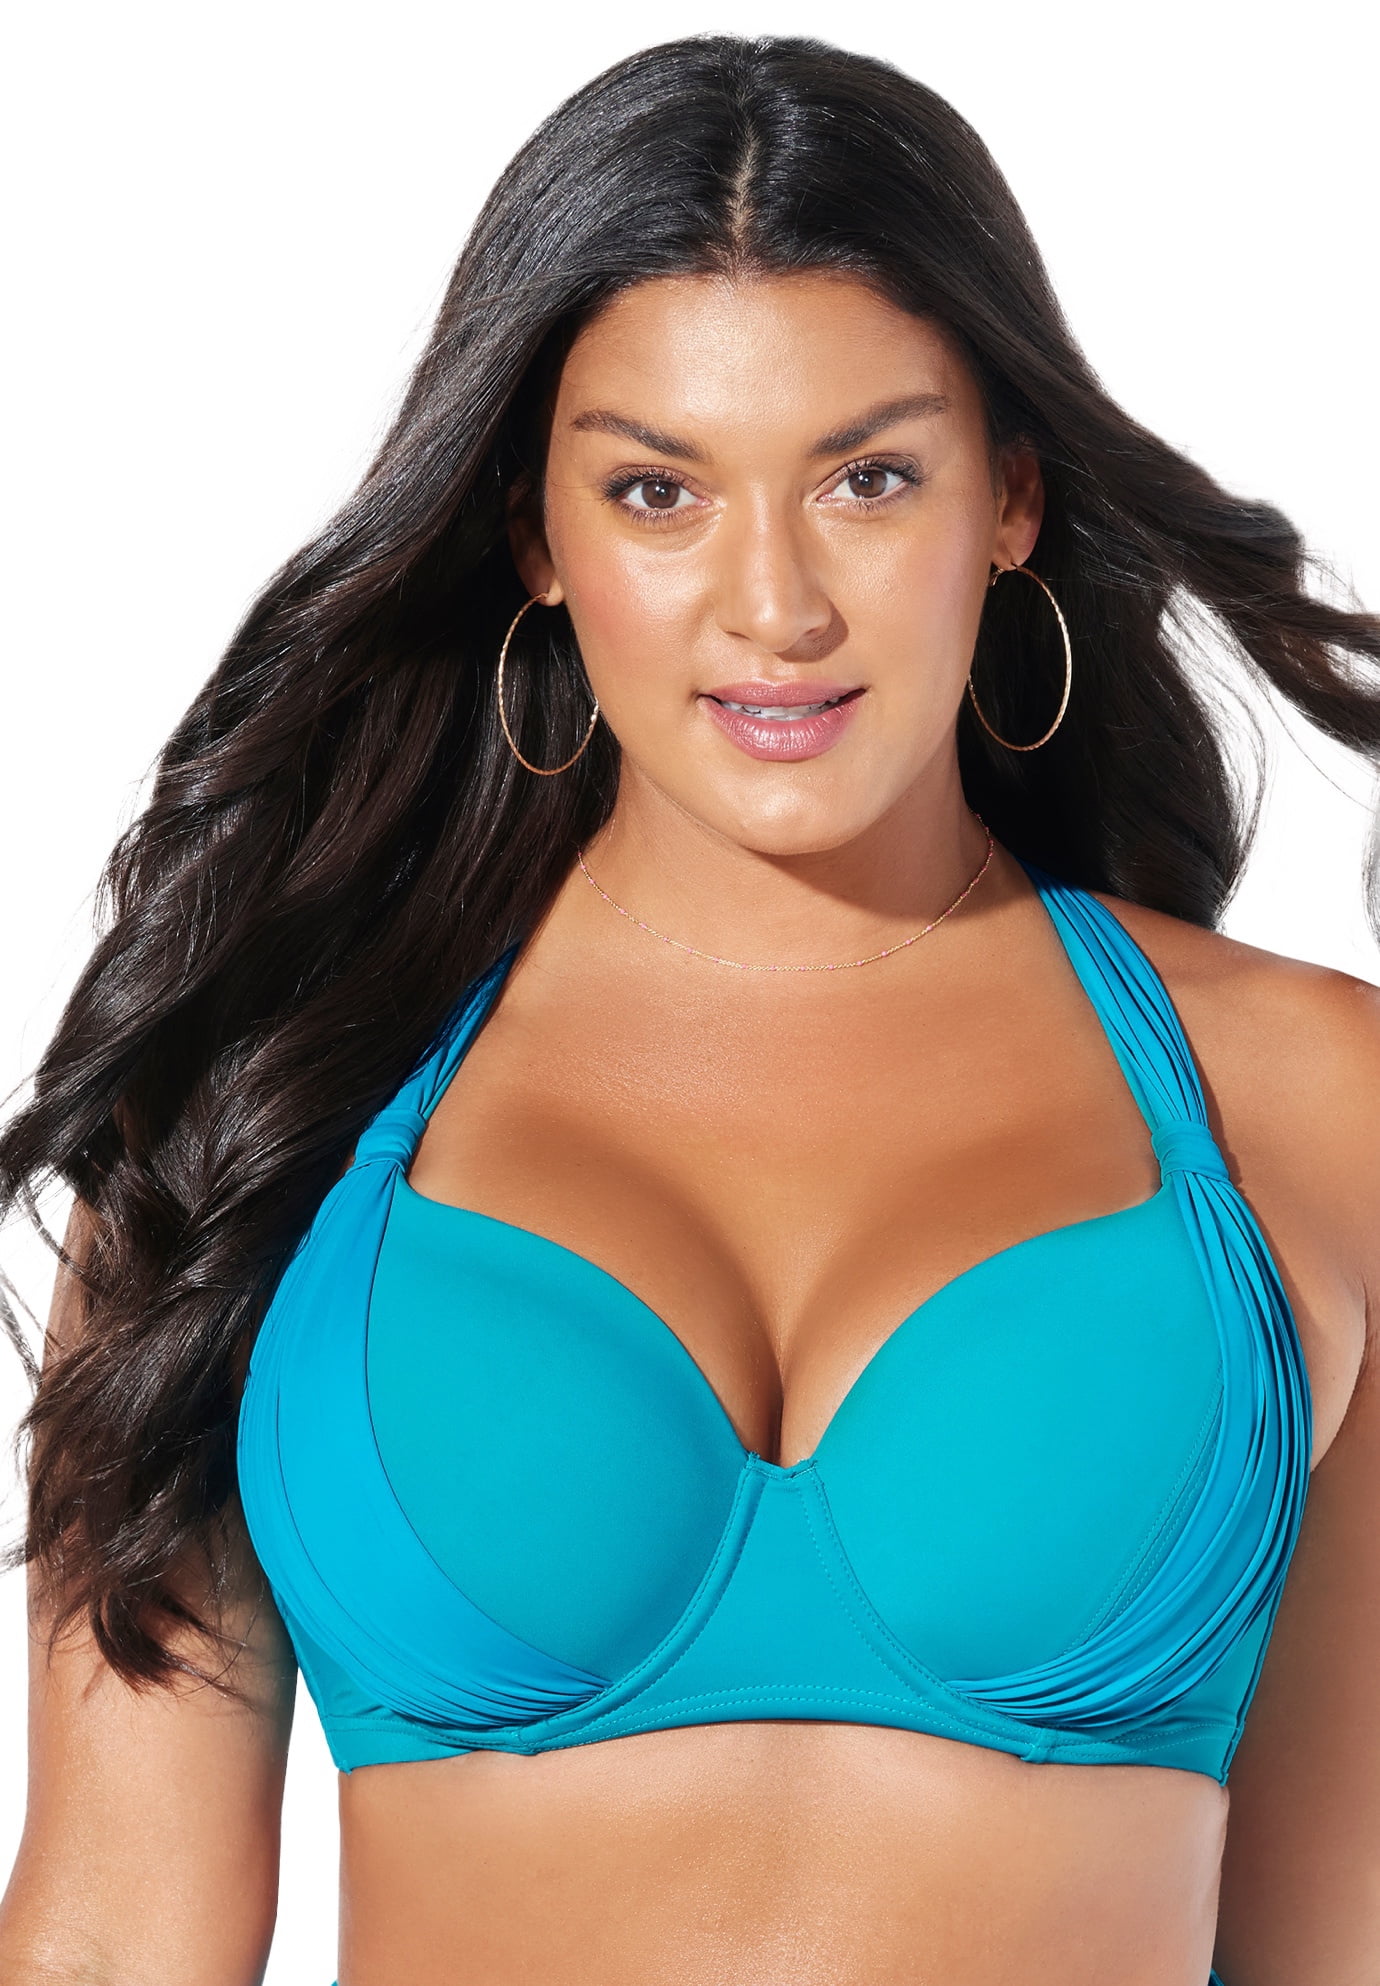 Swimsuits For All Women's Plus Size Ruler Bra Sized Underwire Bikini Top,  44 G - Blue Tie-dye : Target